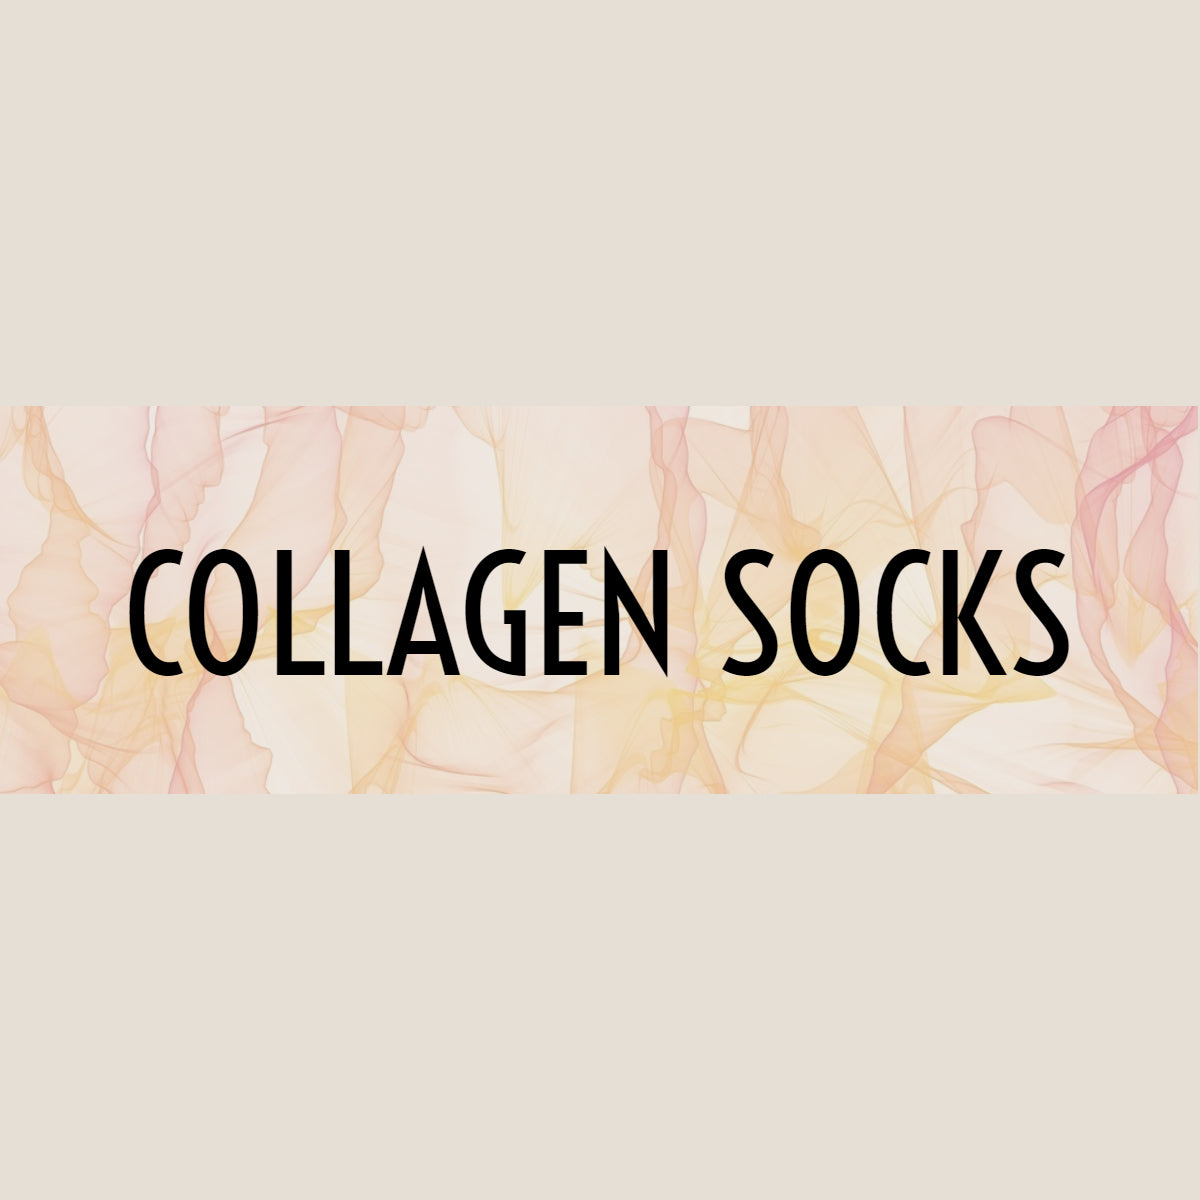 Collagen socks / gloves